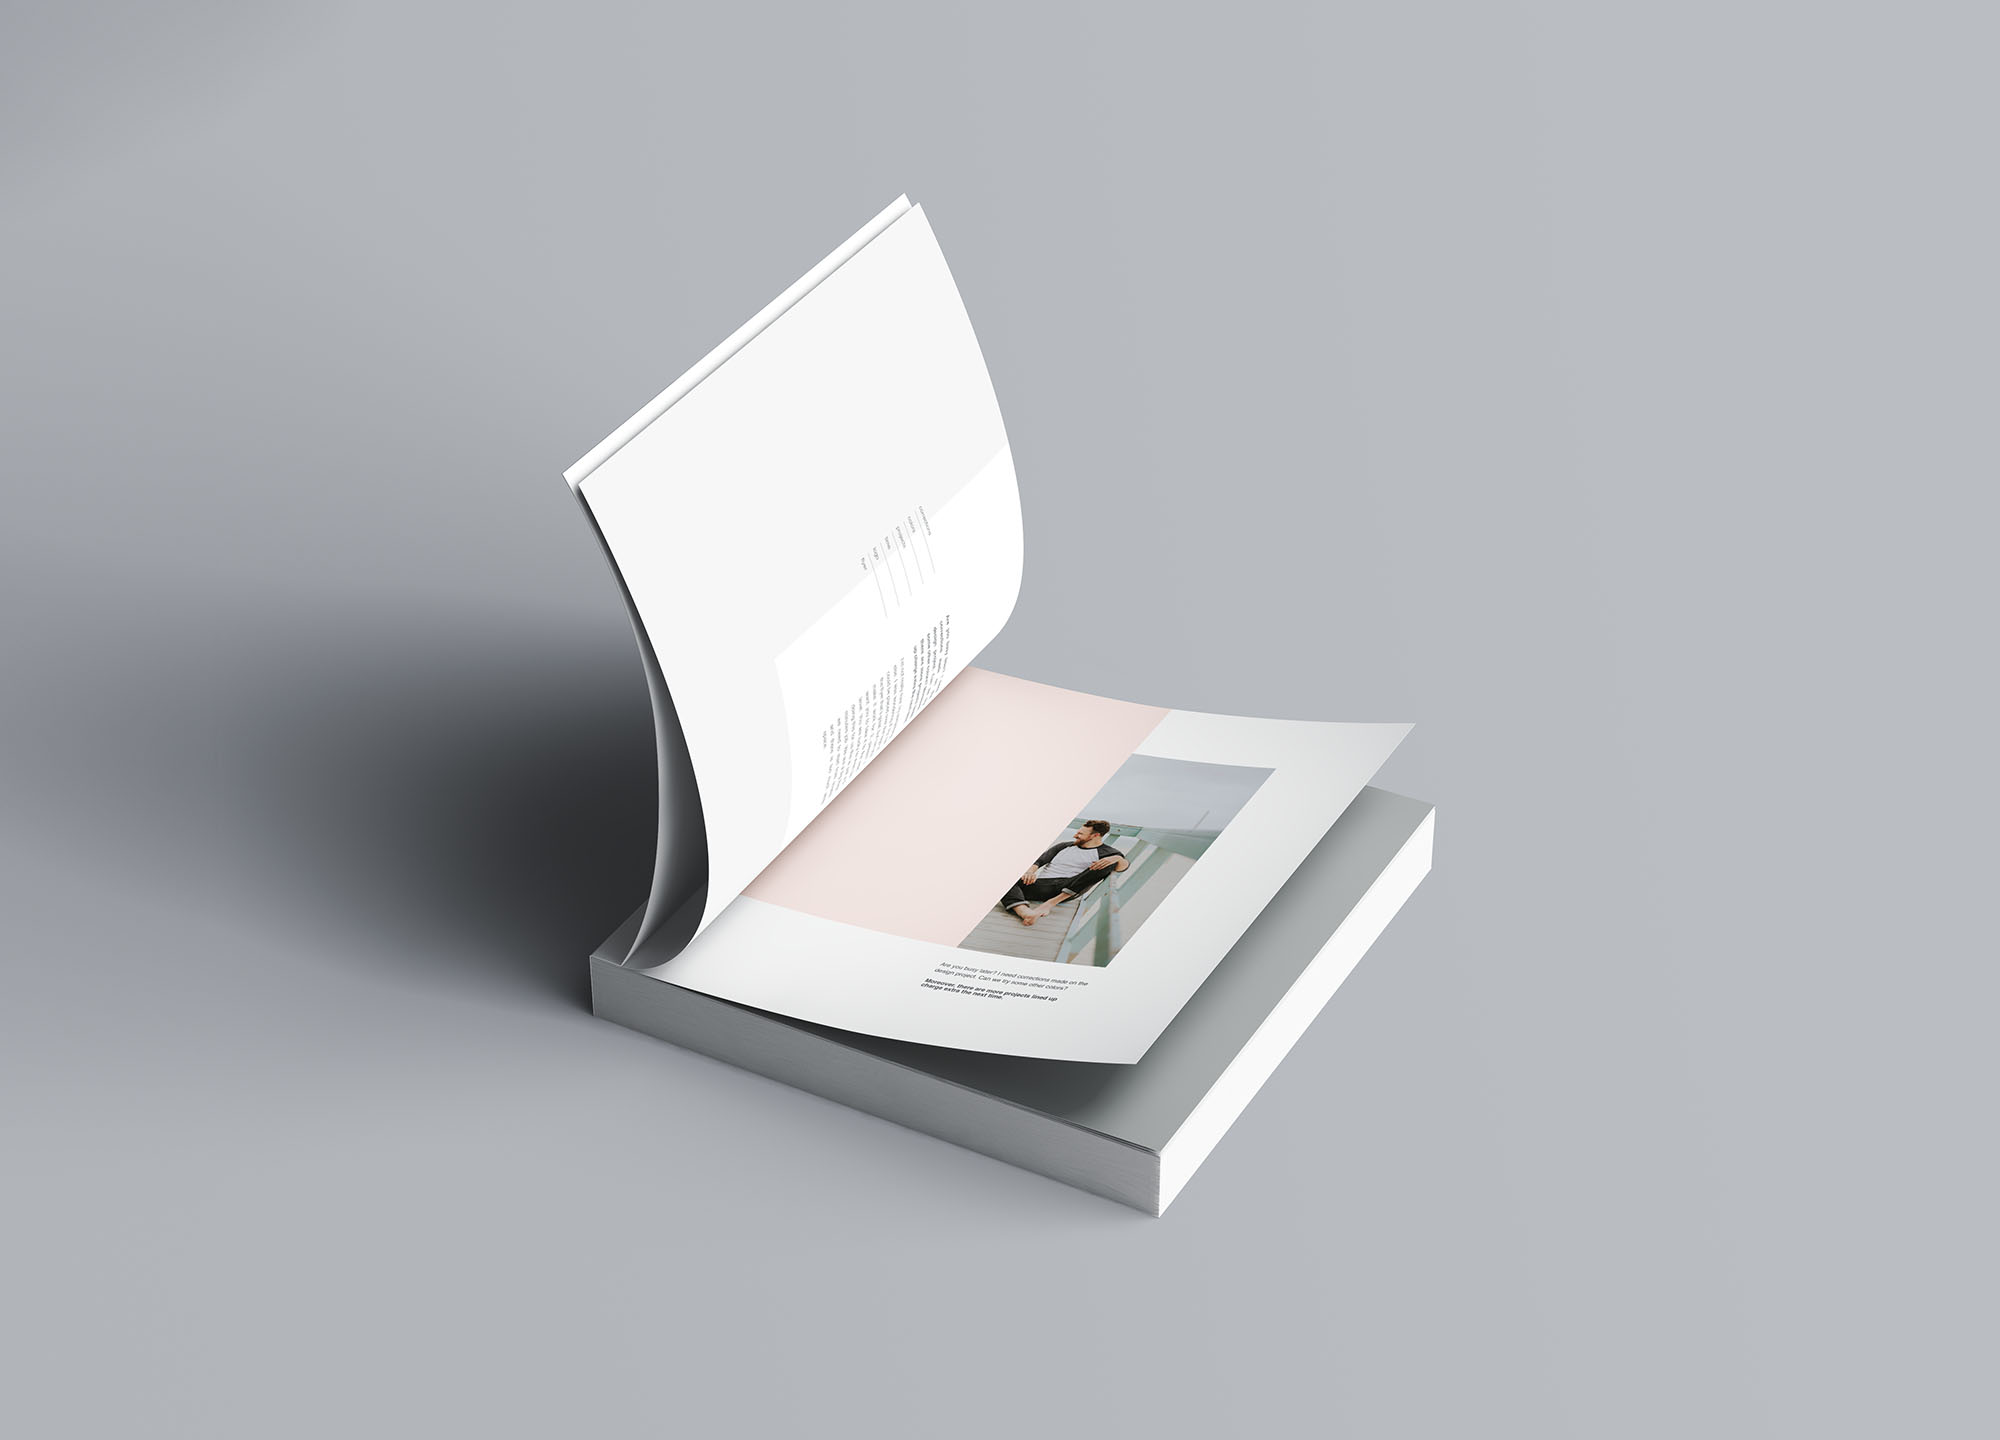 方形软封图书内页版式设计效果图样机蚂蚁素材精选 Square Softcover Book Mockup插图(5)